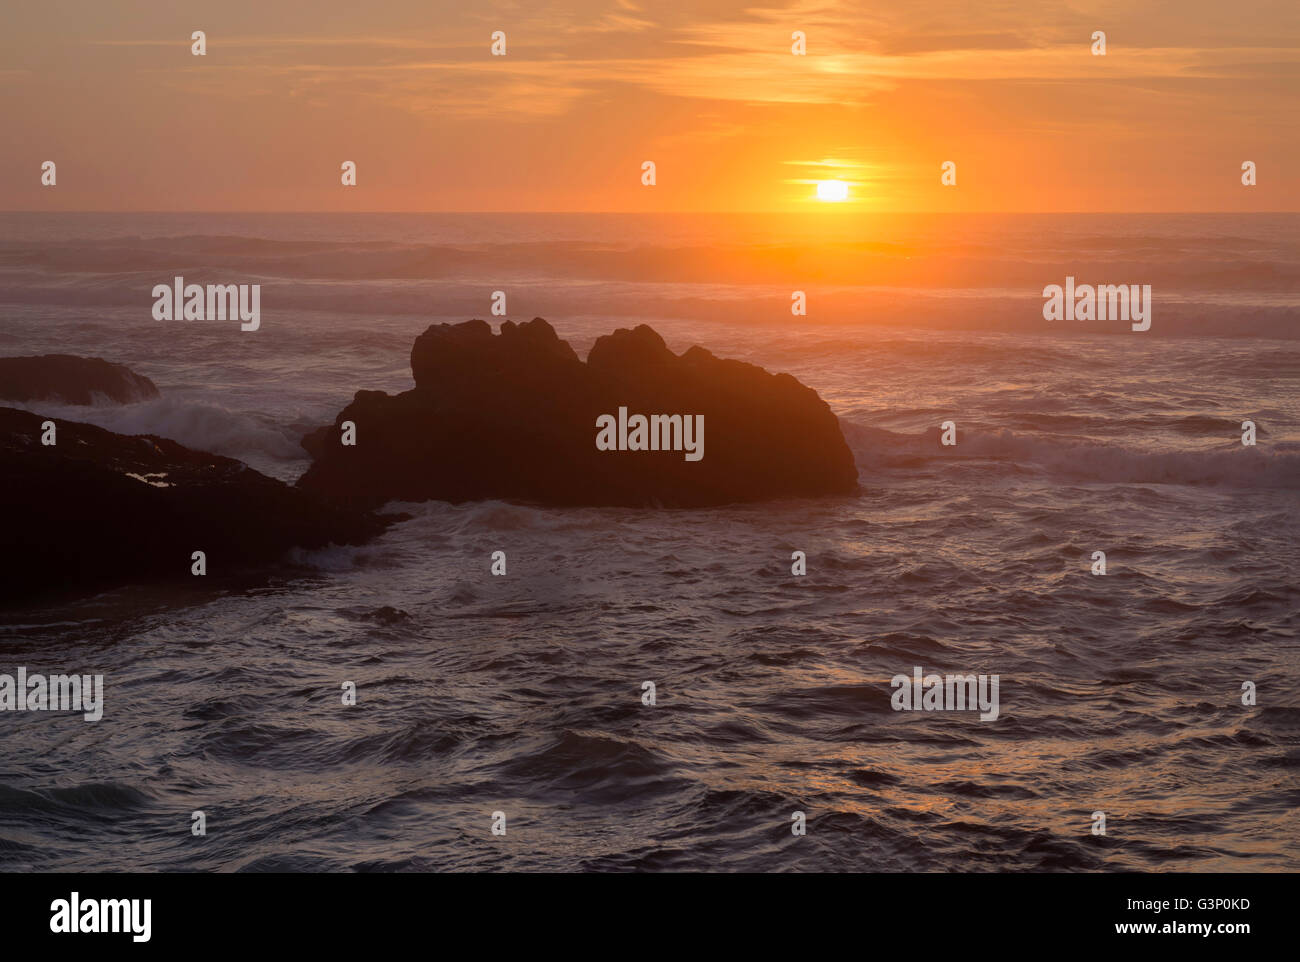 USA, Oregon, Yachats, Sunset over basalt sea stacks. Stock Photo